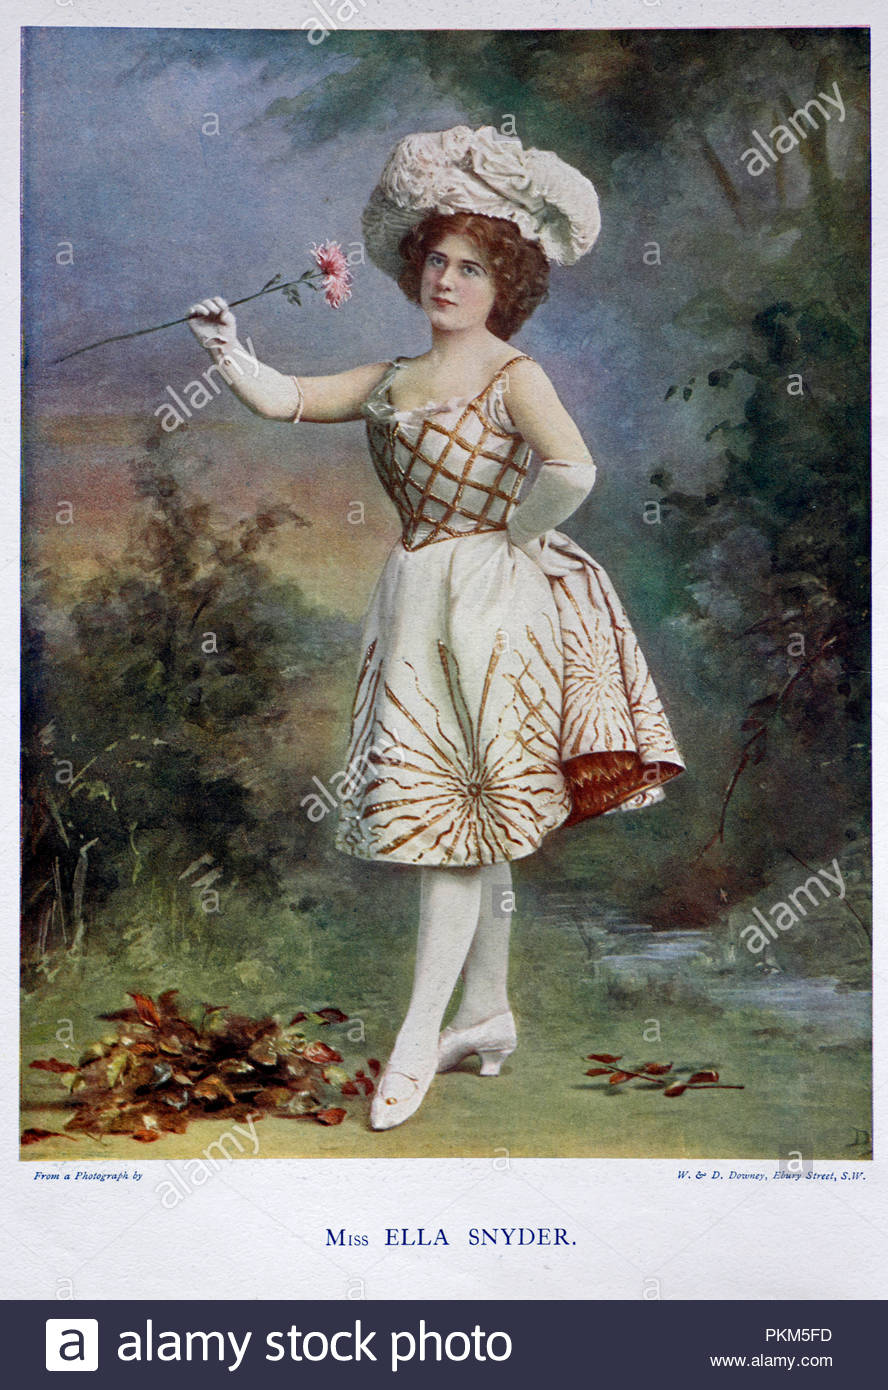 Ella Snyder portrait, était une actrice anglaise à partir de la fin de l'époque victorienne et édouardienne période, illustration couleur à partir de 1899 Banque D'Images